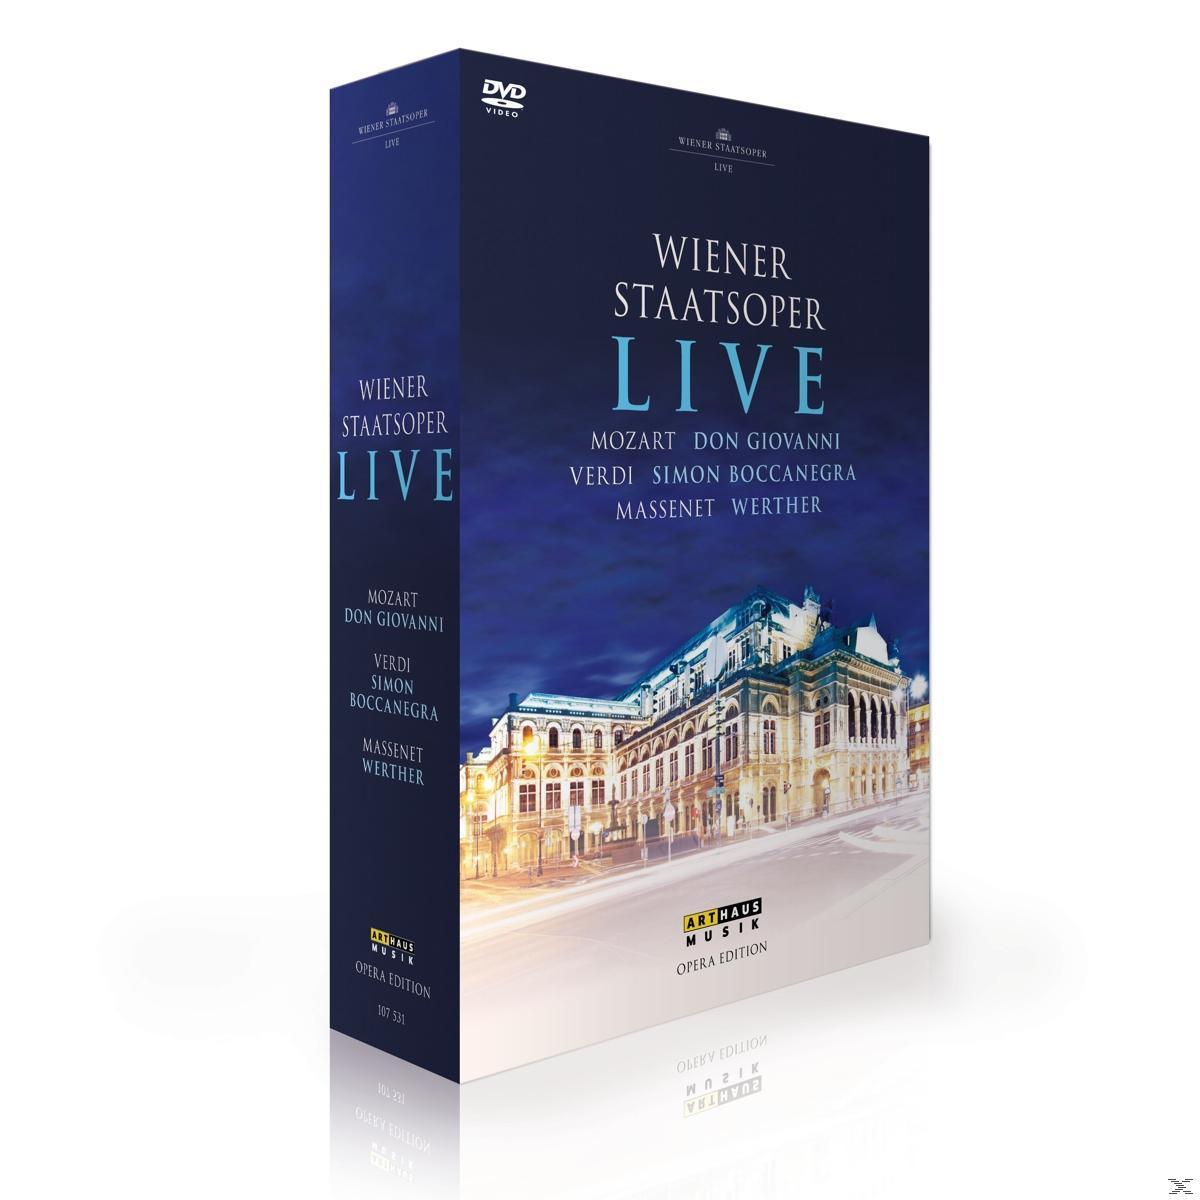 VARIOUS, Wiener Staatsoper - (DVD) Wiener - Staatsoper Live